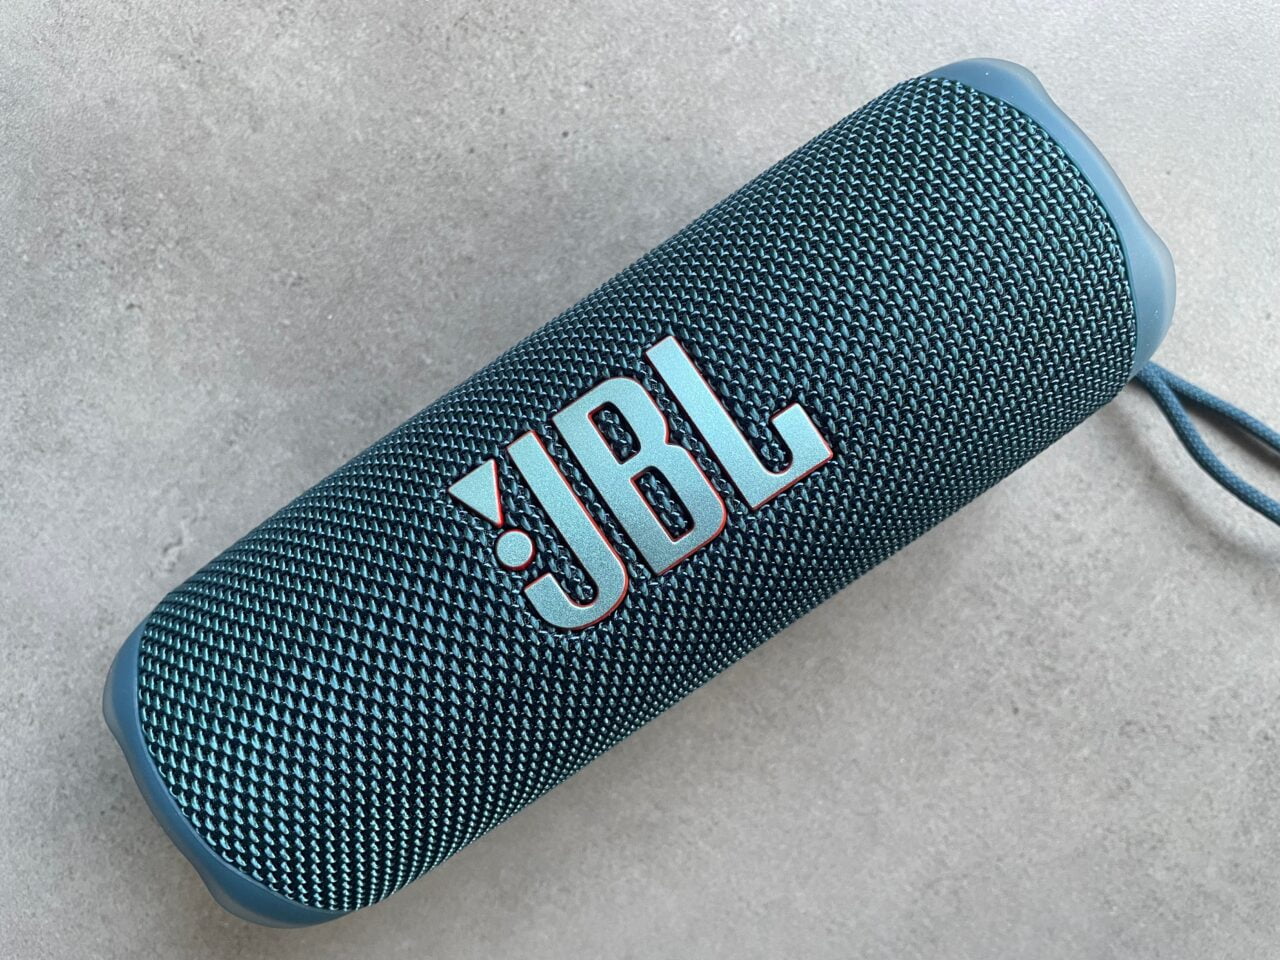 Przenośny głośnik Bluetooth marki JBL w kolorze turkusowym, leżący na jasnej powierzchni.